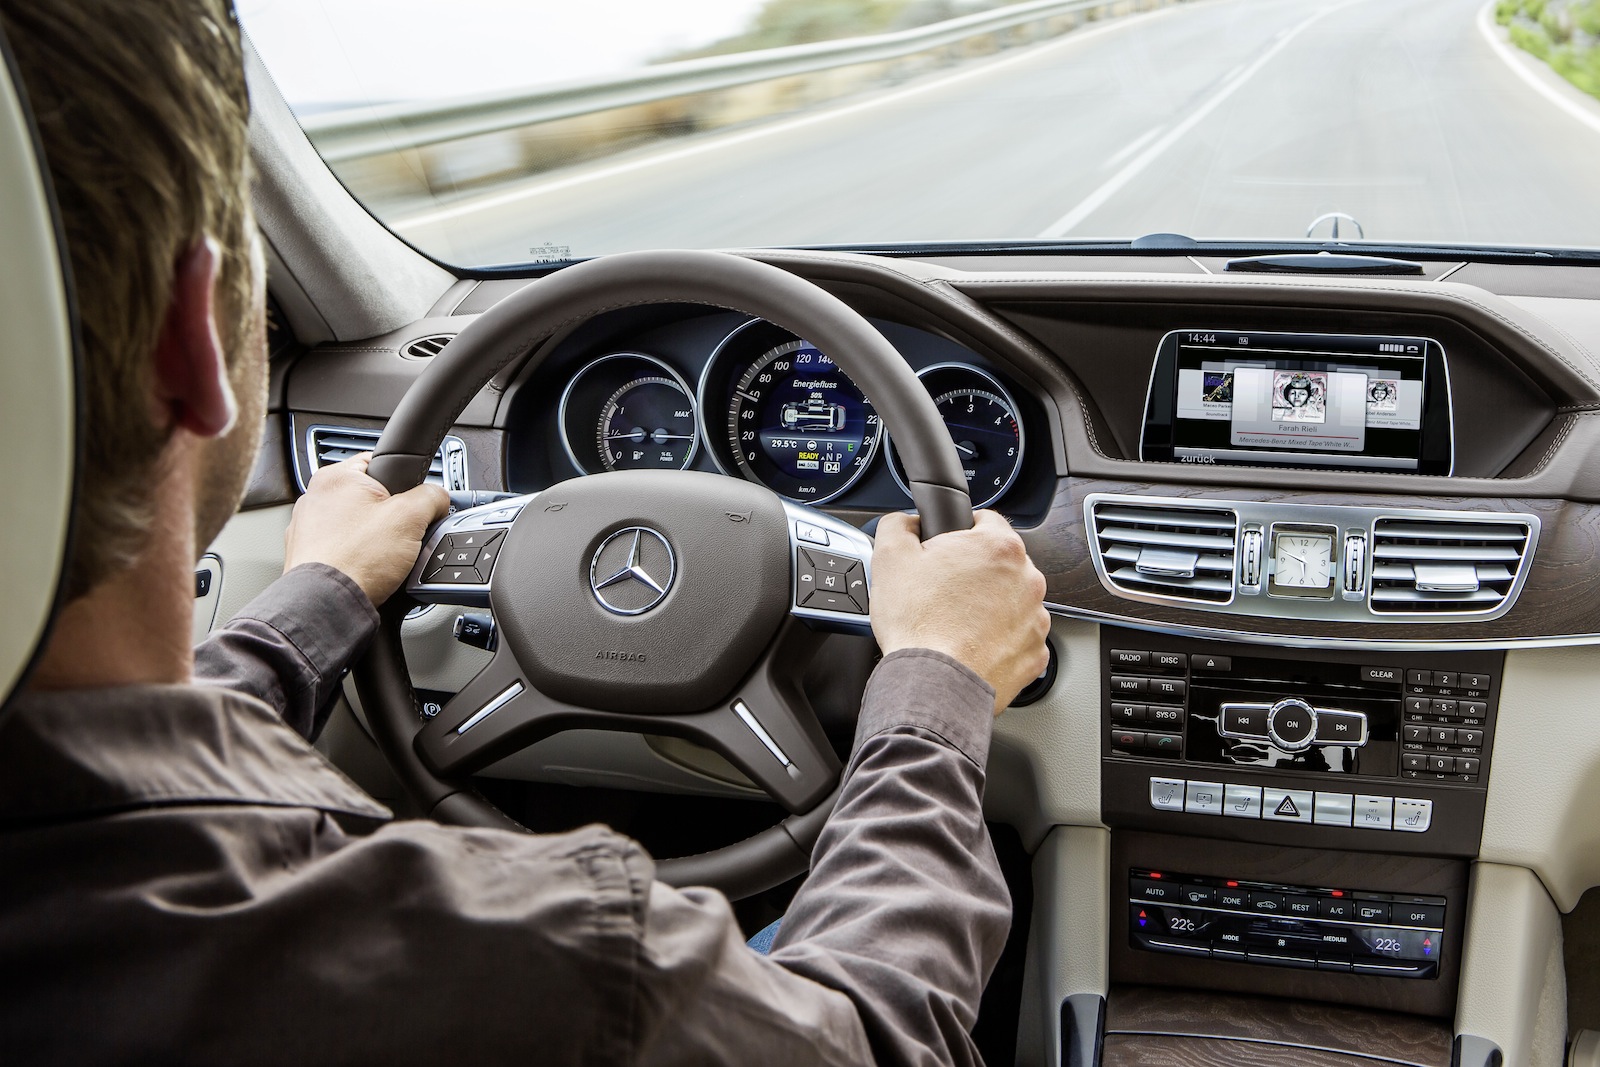 2014 Mercedes-Benz E Class Sedan & Wagon Preview